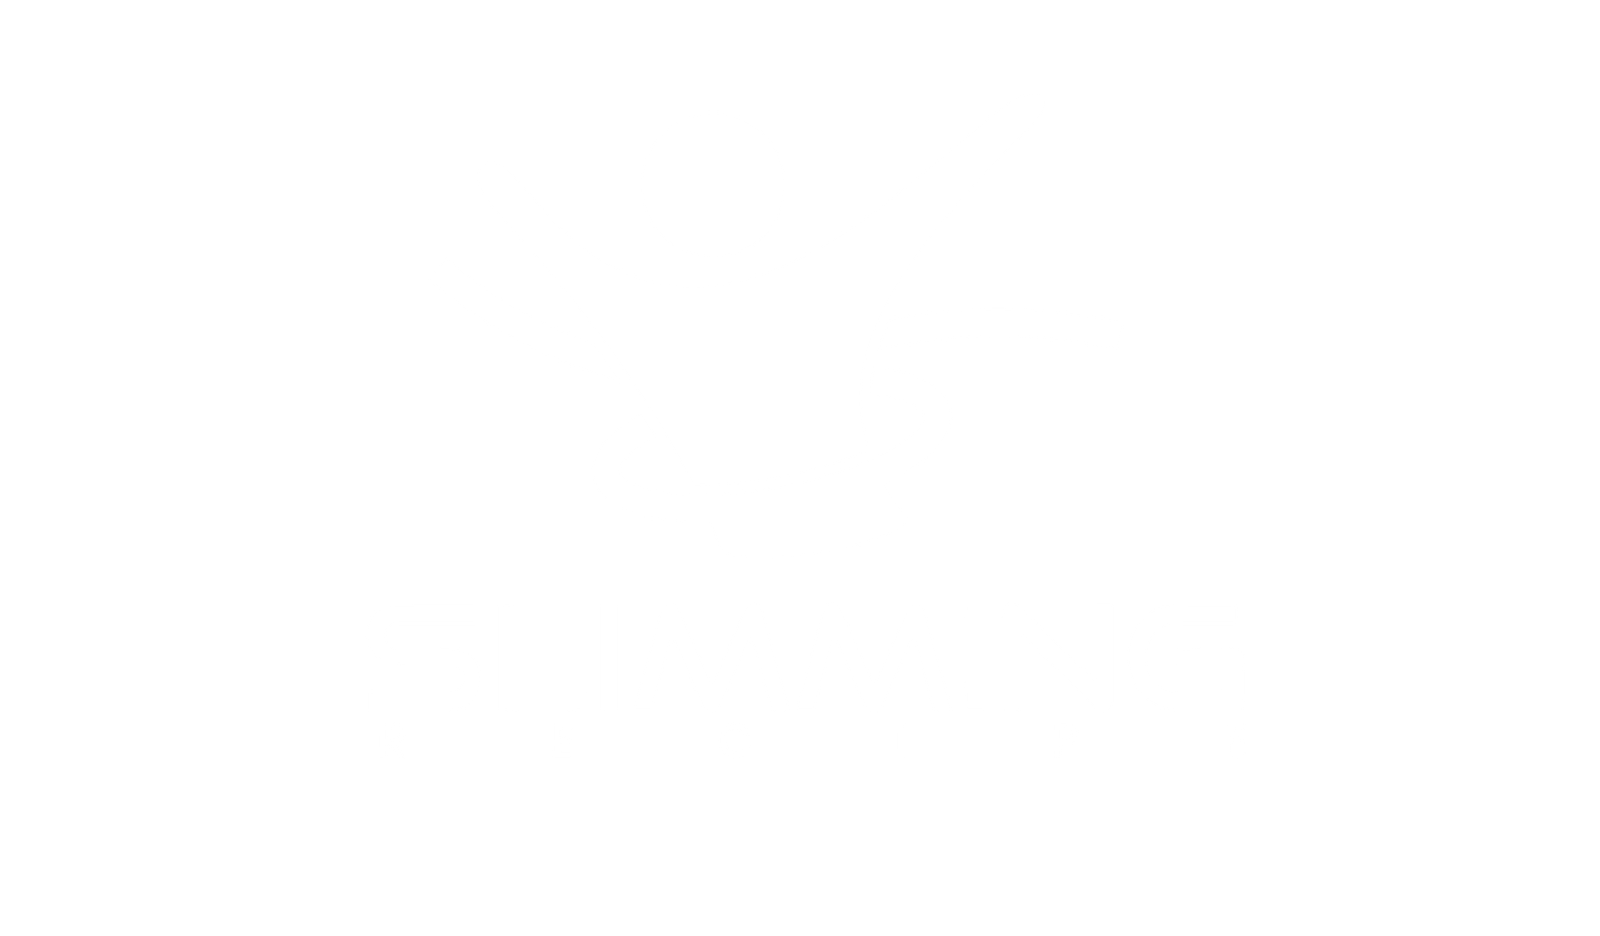 Recipe slimming